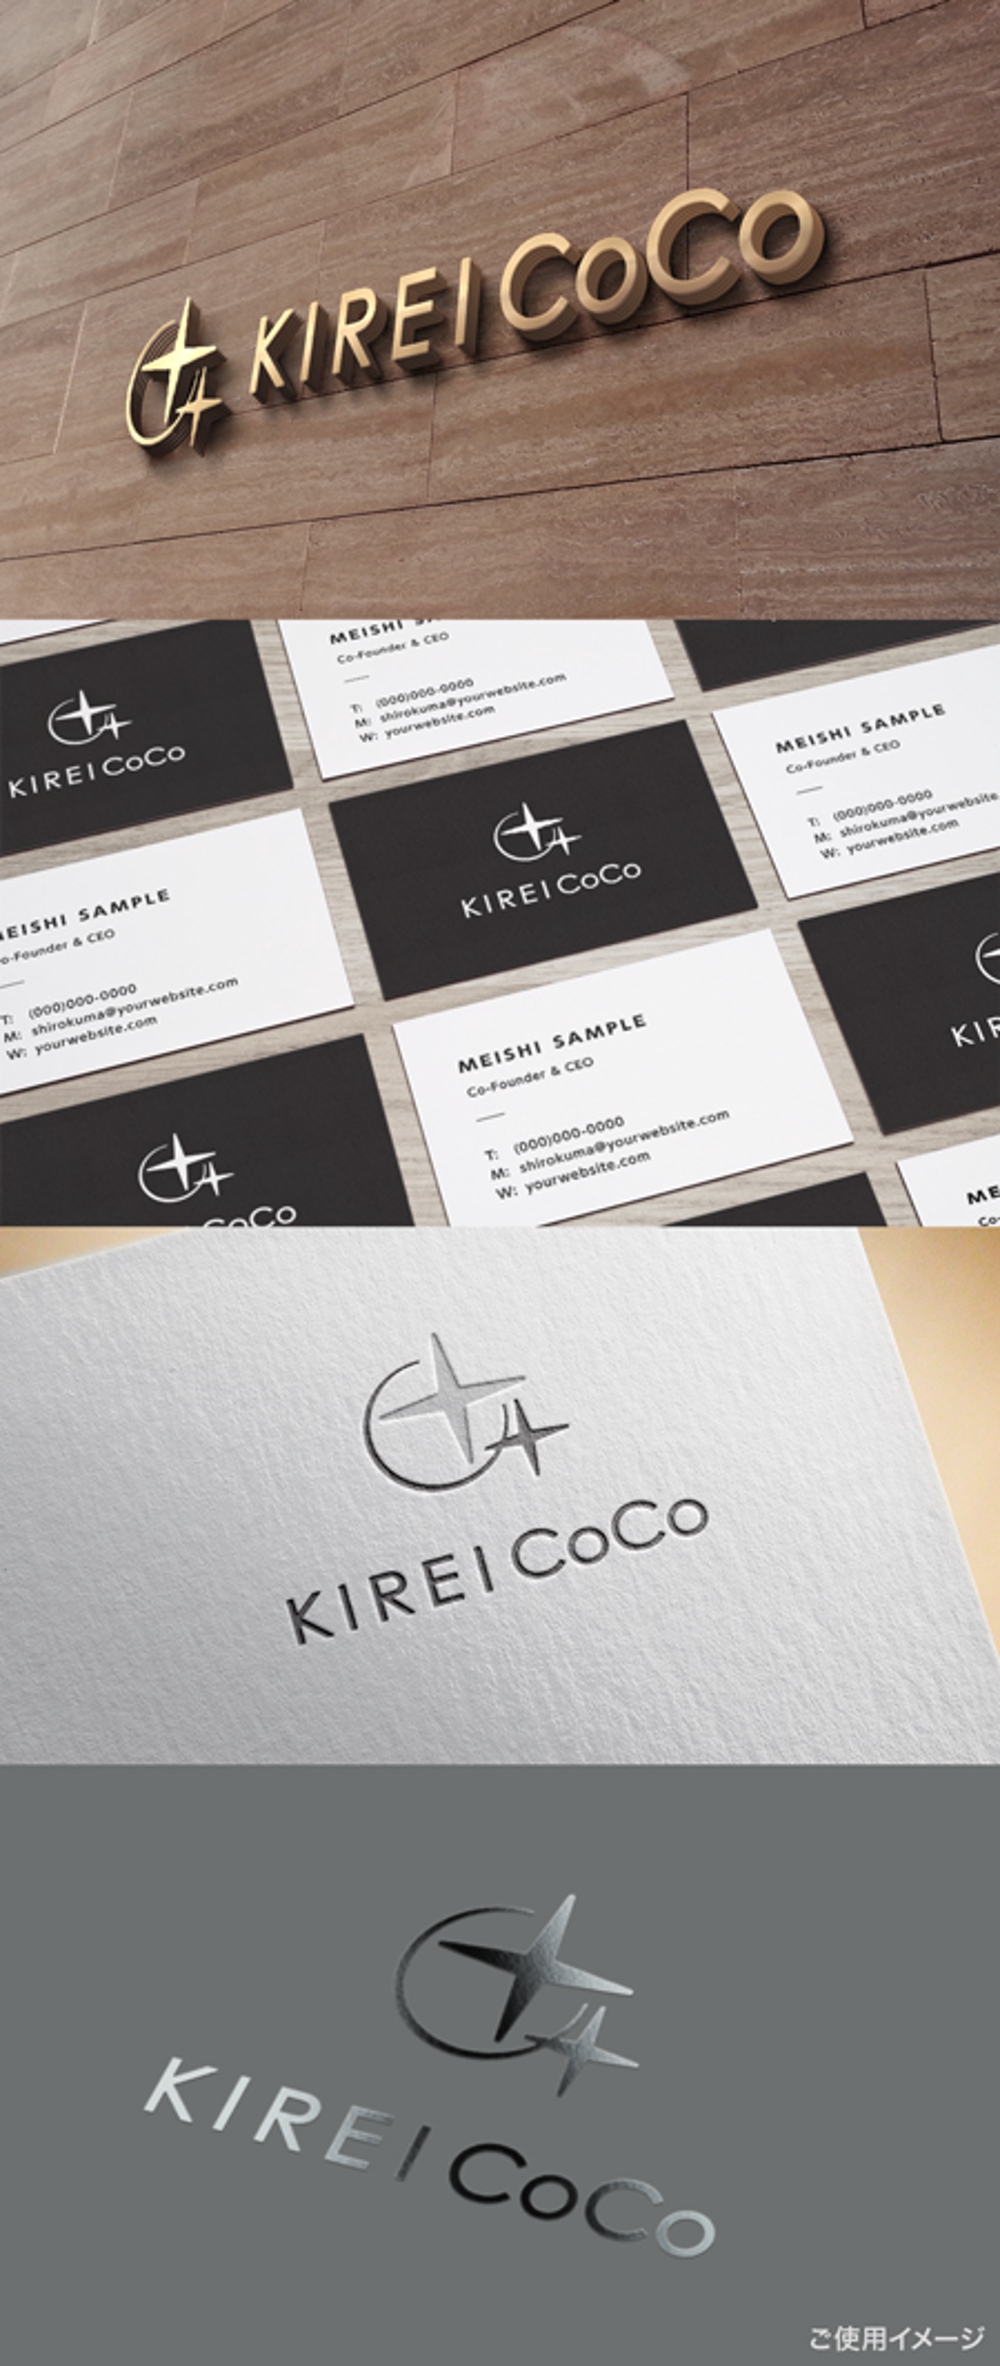 美容室専売品のＥＣサイト「KIREI CoCo」ロゴ　商標登録予定なし